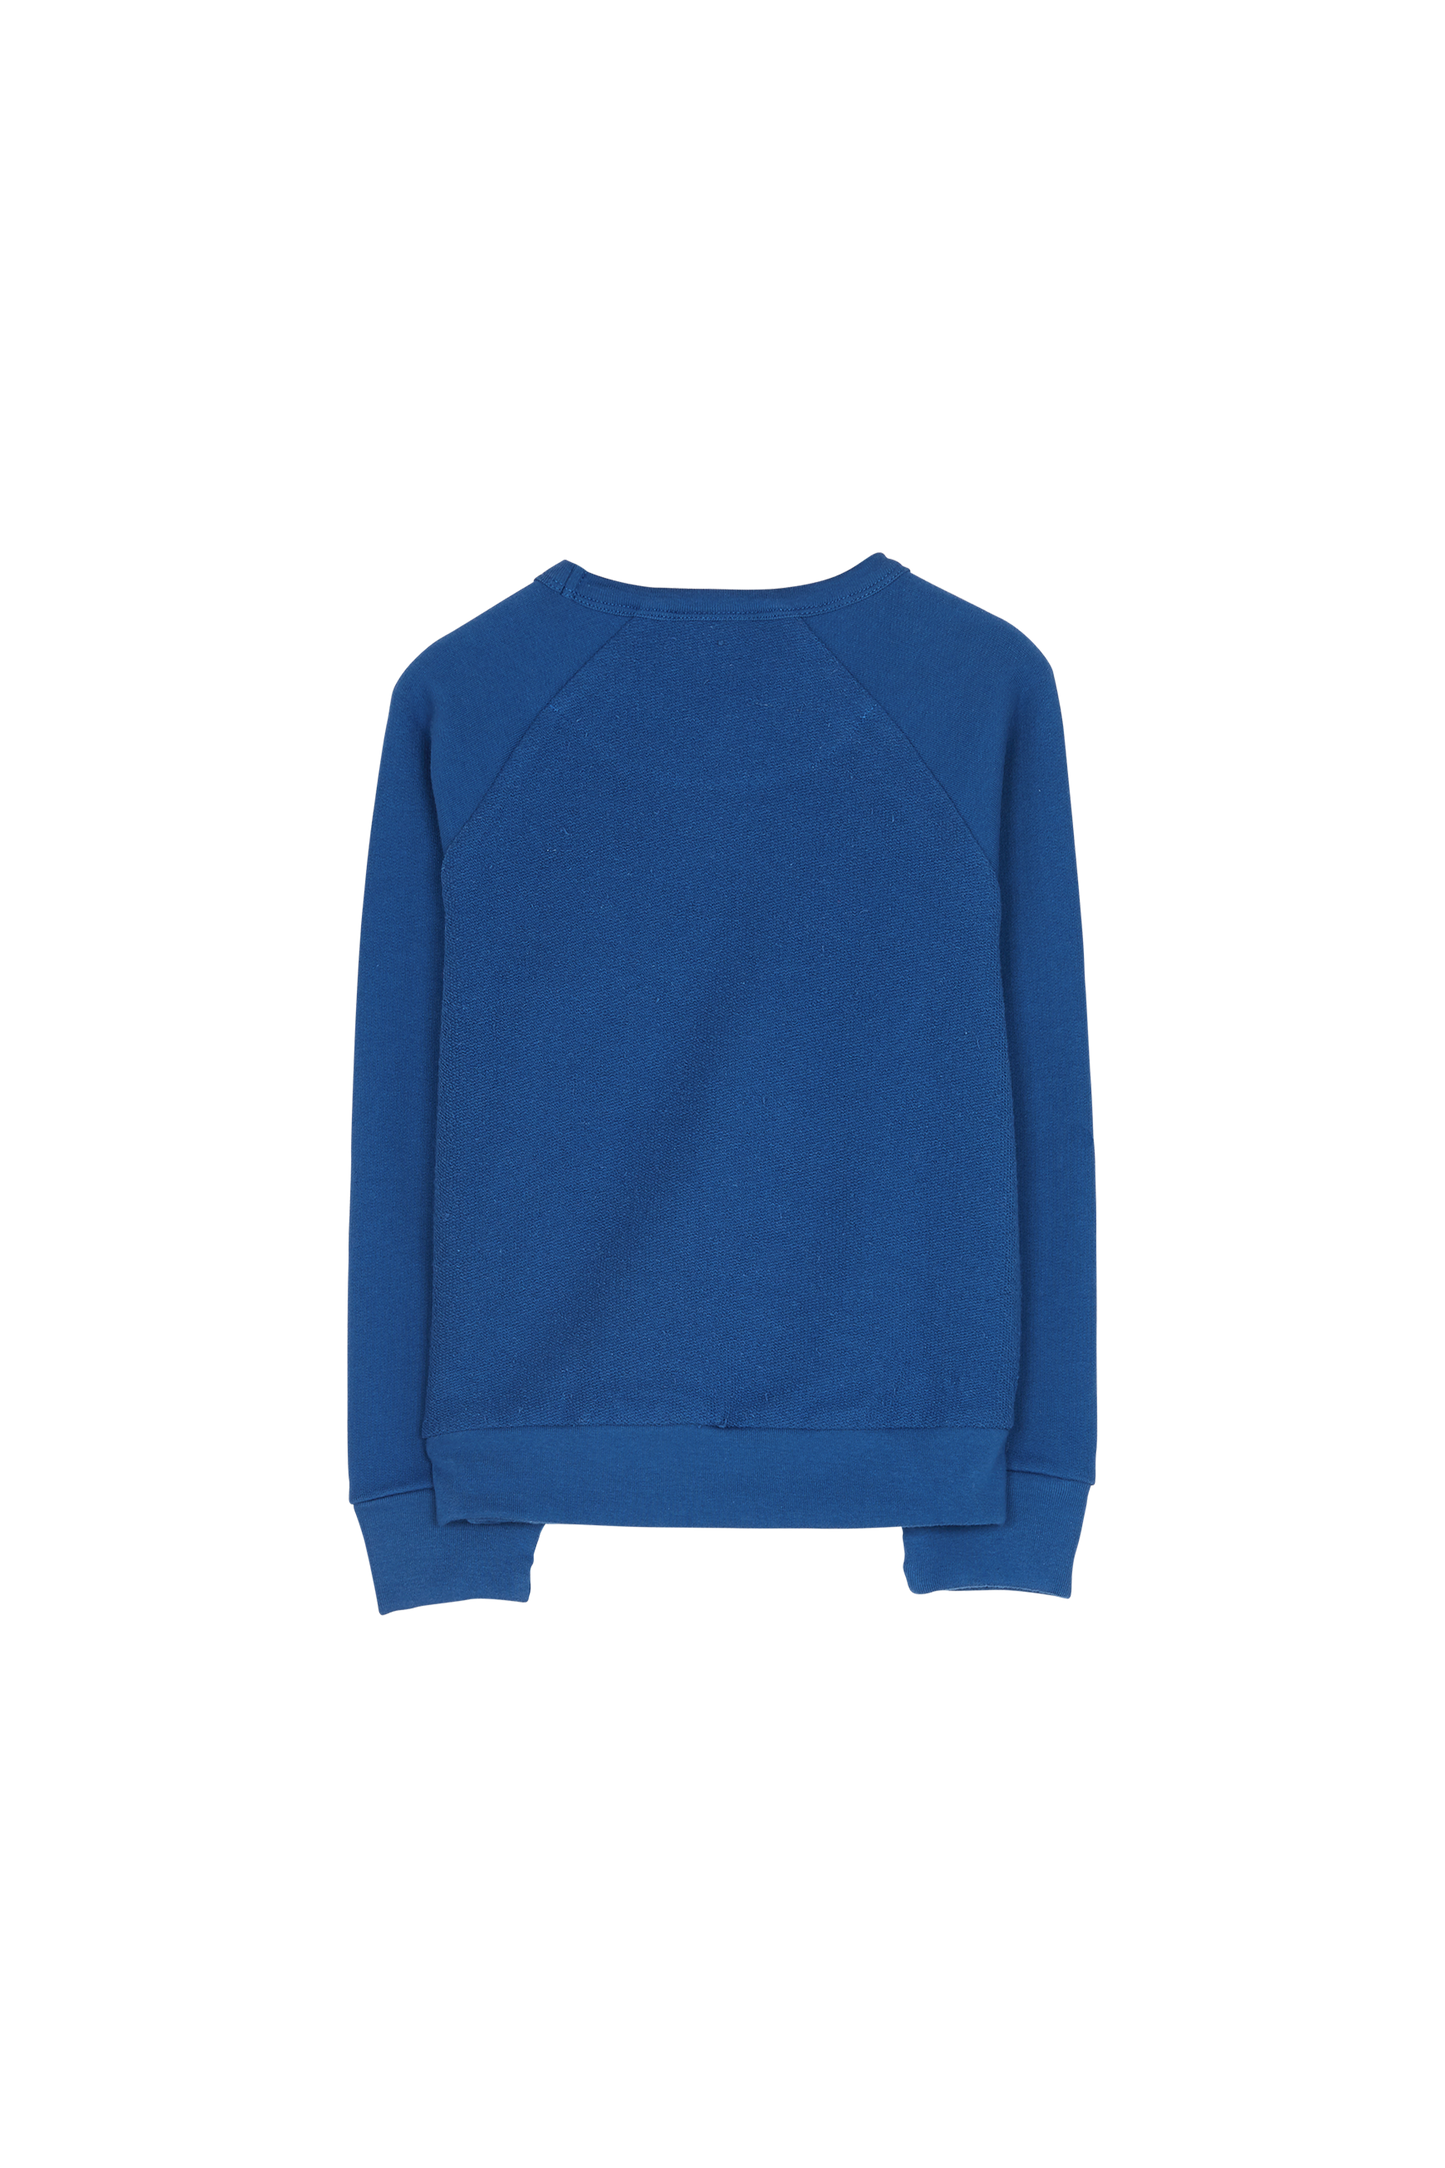 HENRY True Blue - Raglan Sleeve Sweater